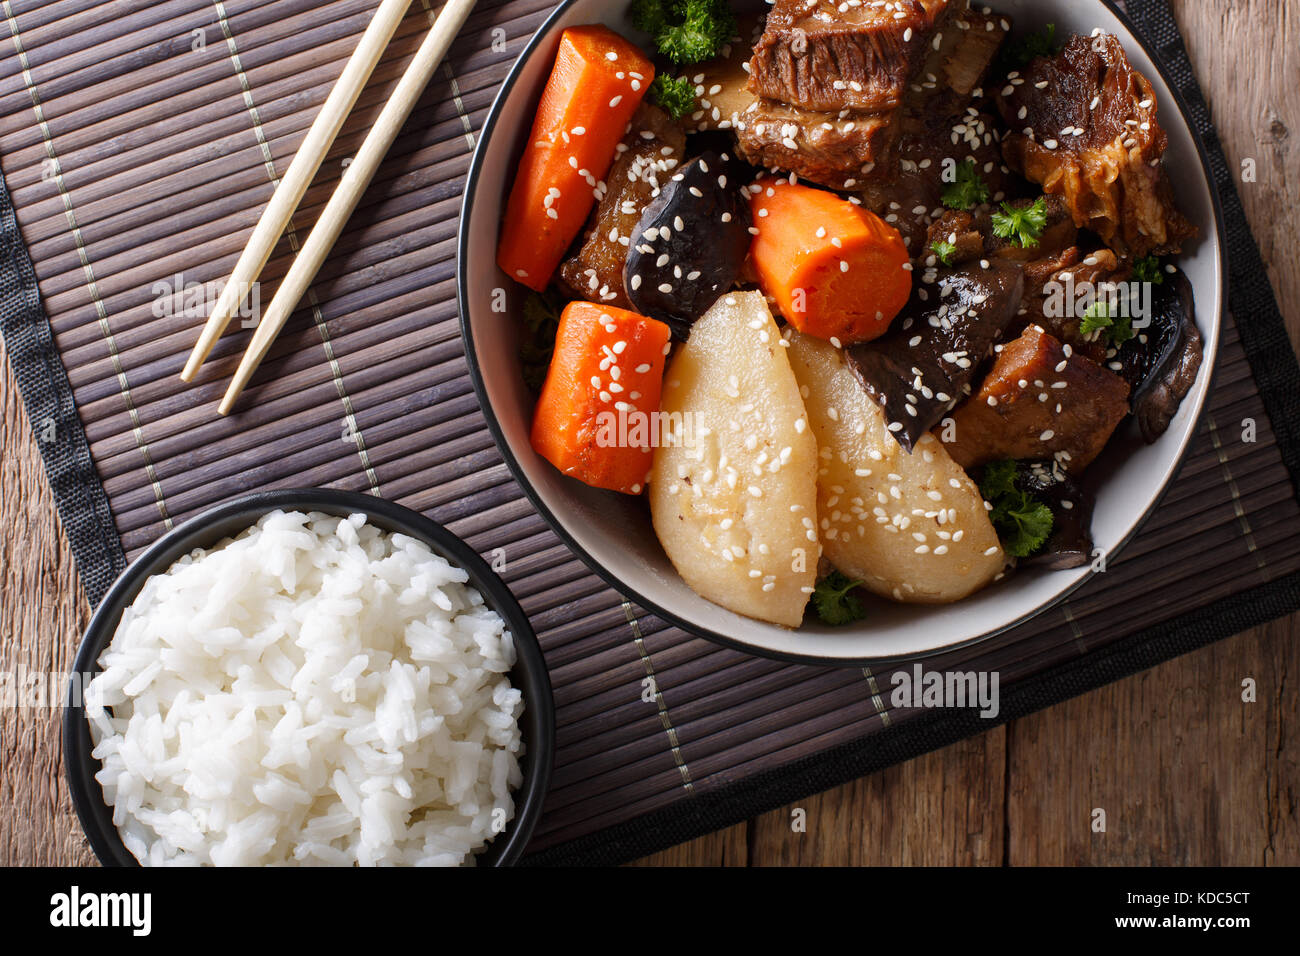 Jjim galbi bœuf braisé coréen côtes courtes avec du riz sur la table. haut horizontale Vue de dessus Banque D'Images